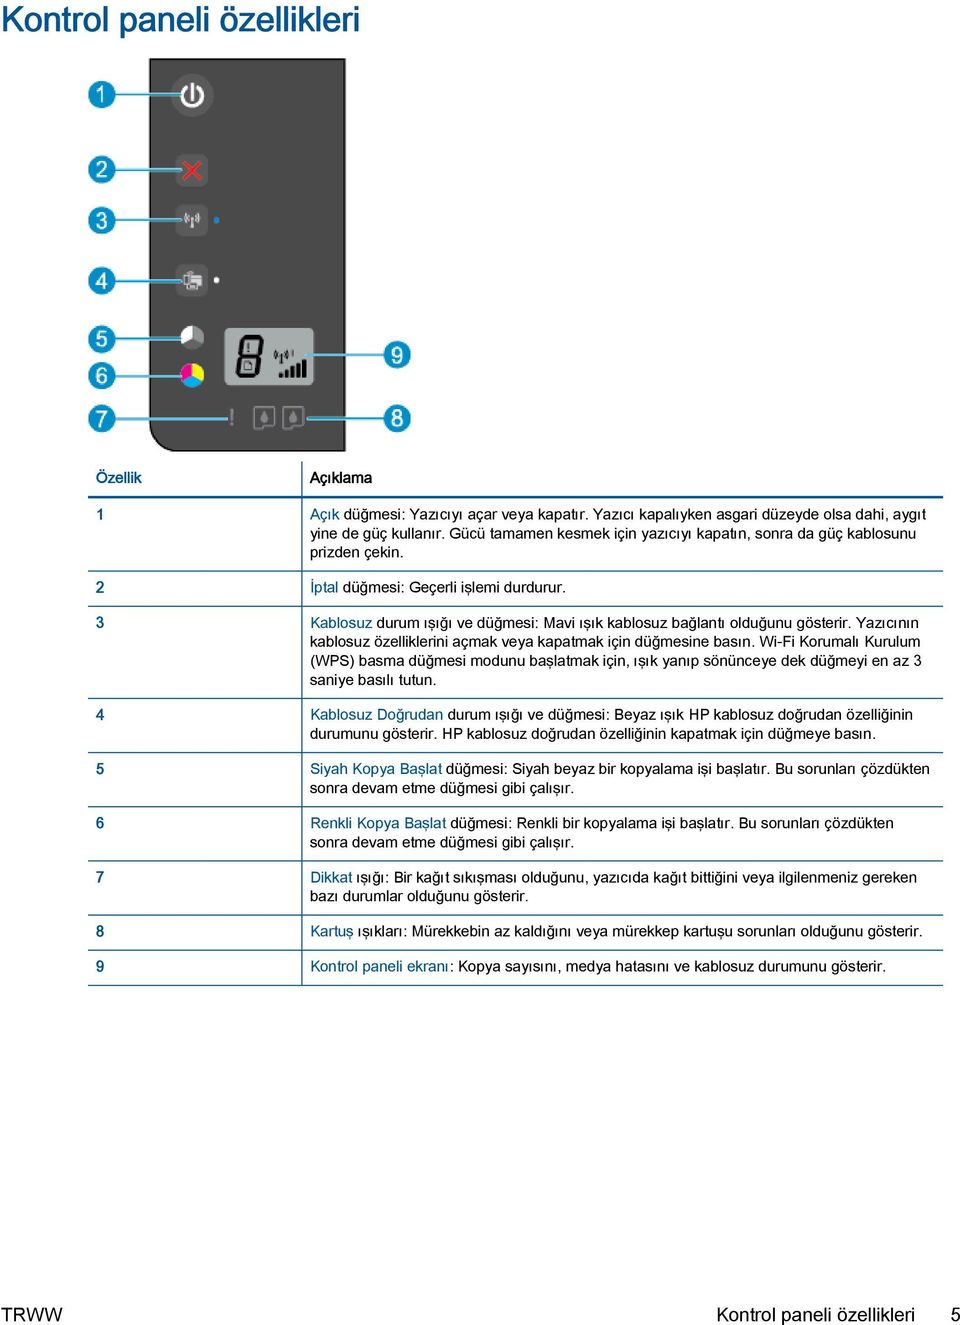 3 Kablosuz durum ışığı ve düğmesi: Mavi ışık kablosuz bağlantı olduğunu gösterir. Yazıcının kablosuz özelliklerini açmak veya kapatmak için düğmesine basın.